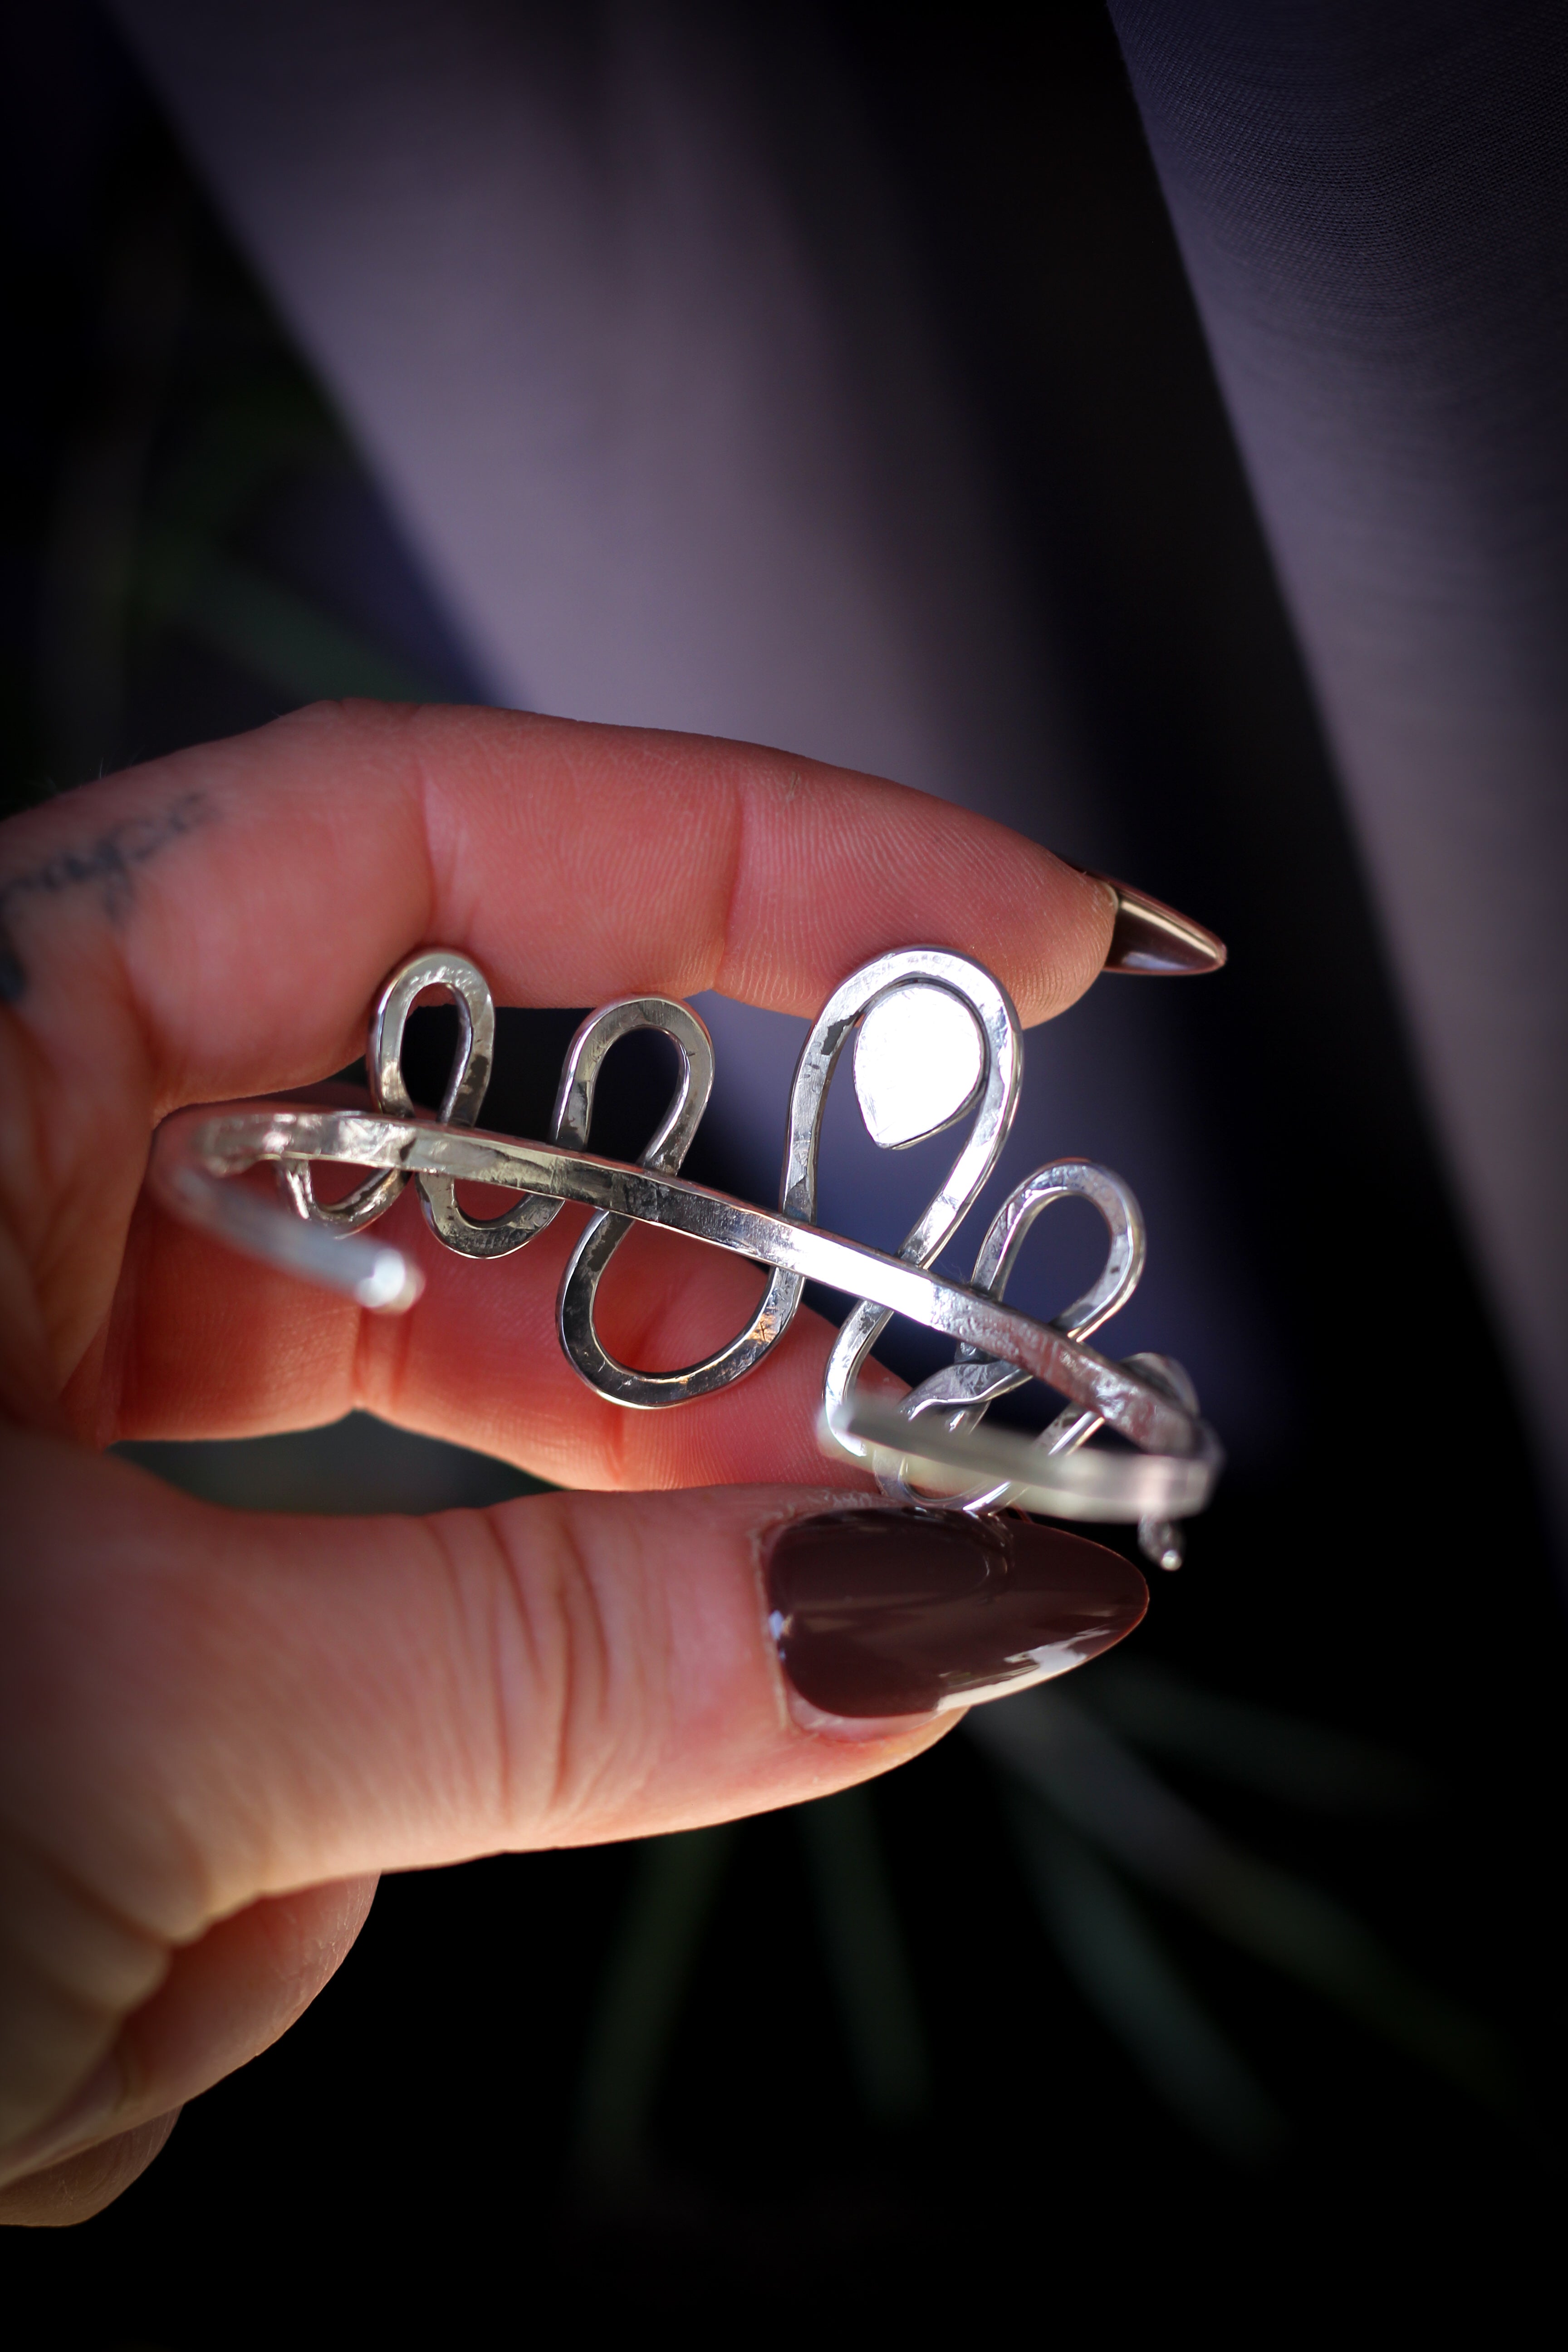 Le Jörmungand - Bracelet manchette en lapis lazuli, cristal facetté et argent, serpent forgé